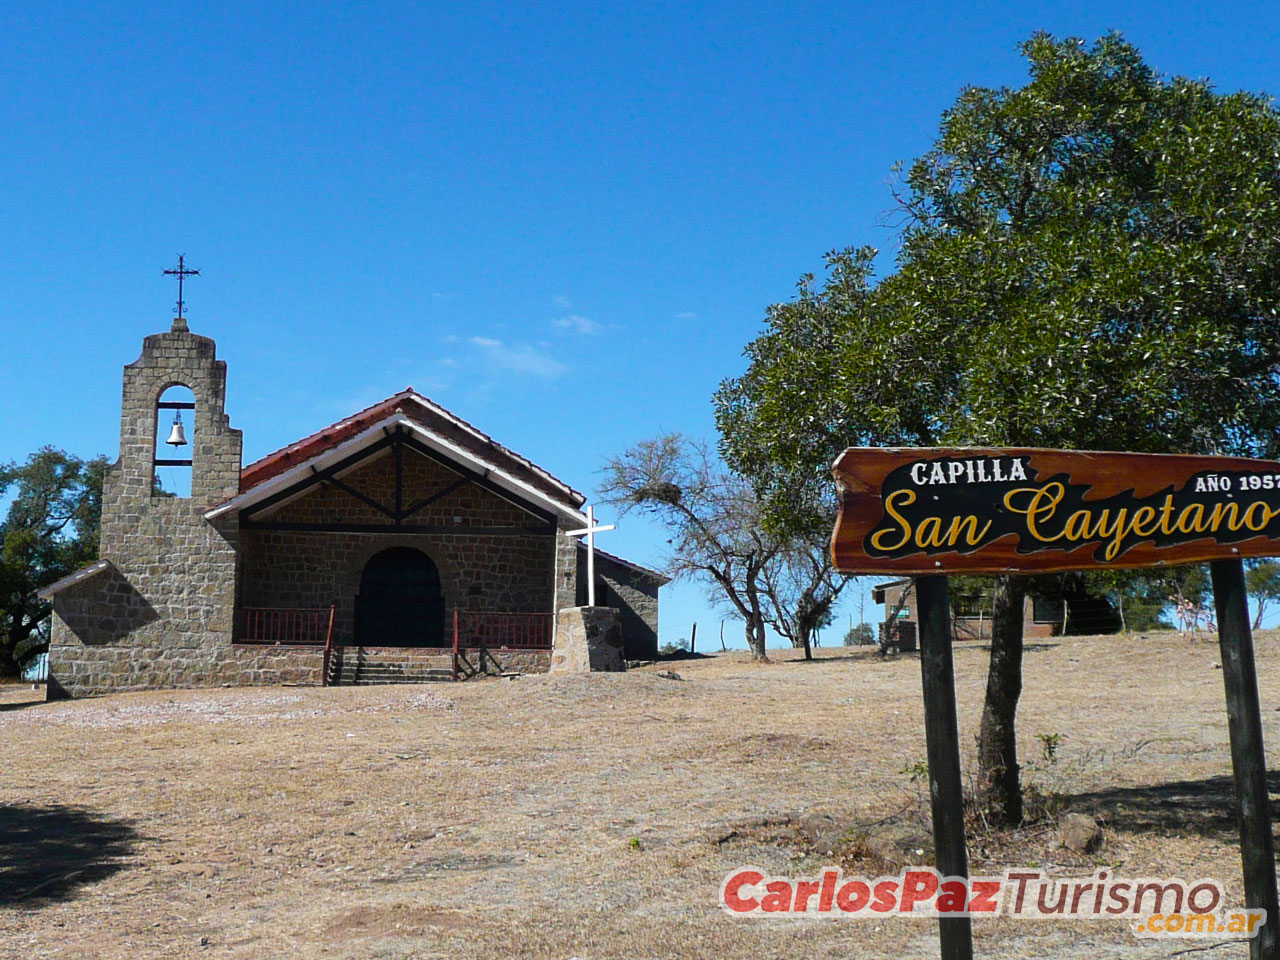 Sitios a Visitar en Cabalango - Imagen: Carlospazturismo.com.ar